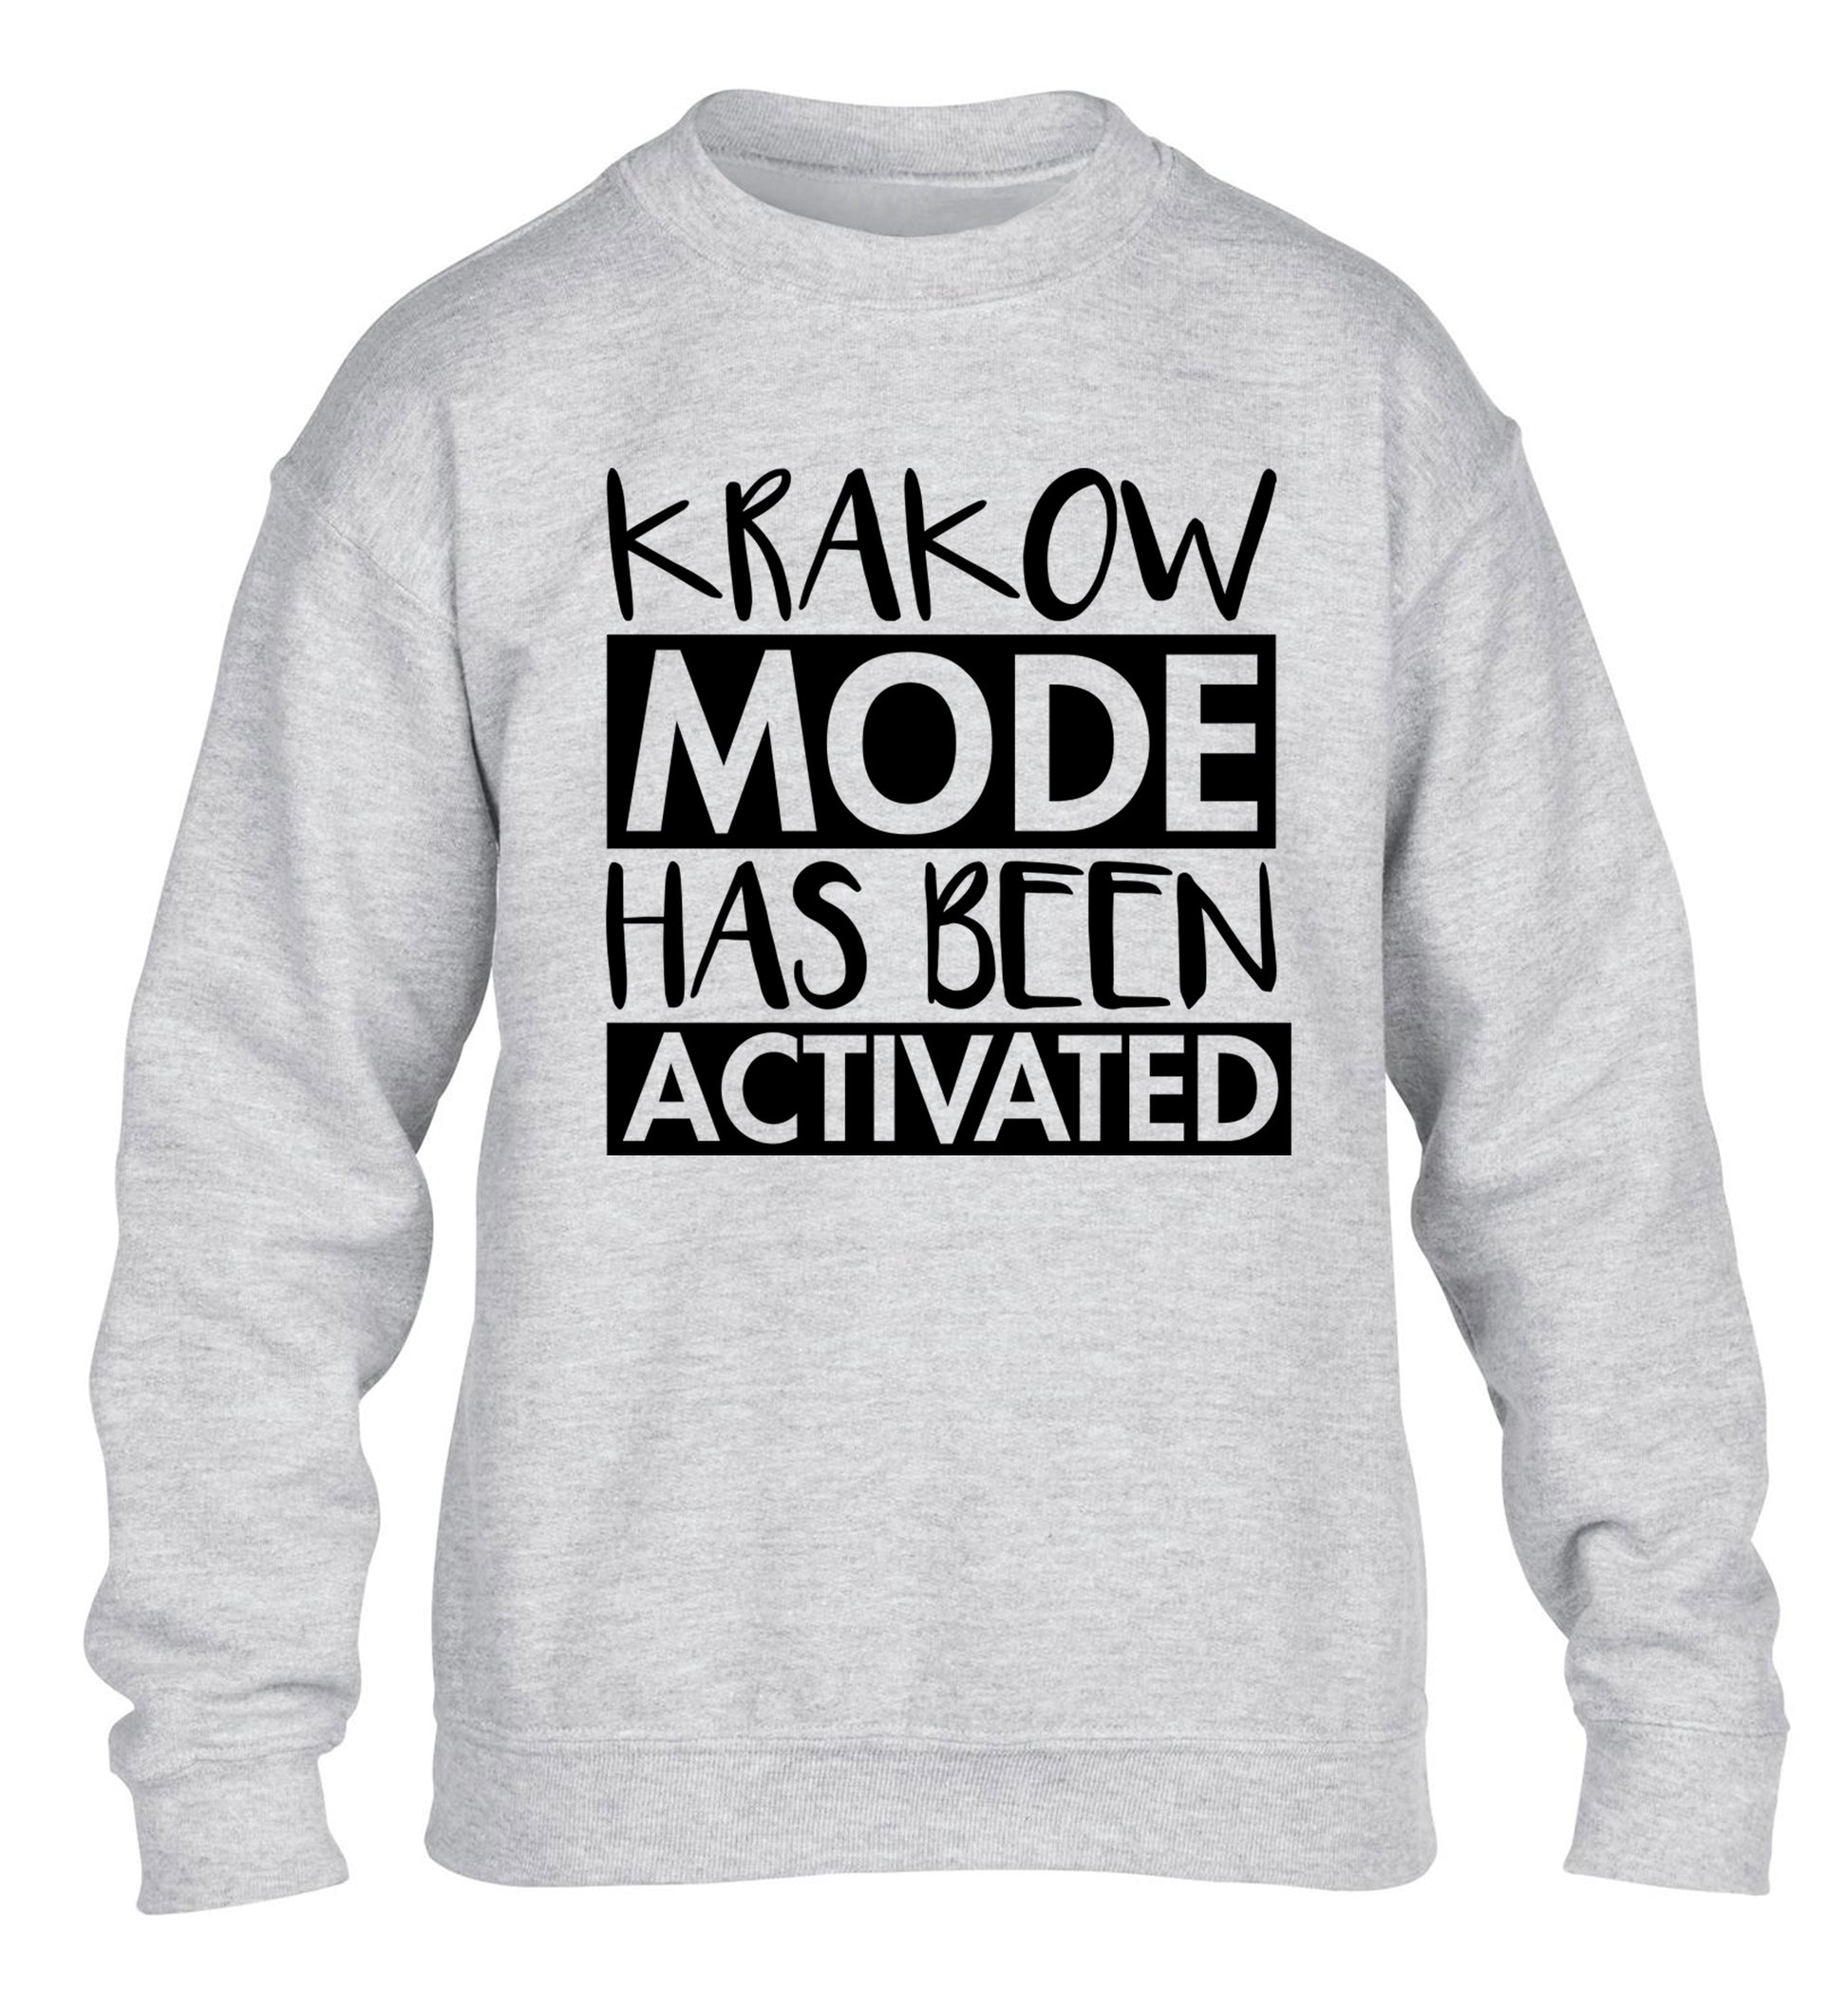 Krakow mode has been activated children's grey sweater 12-13 Years